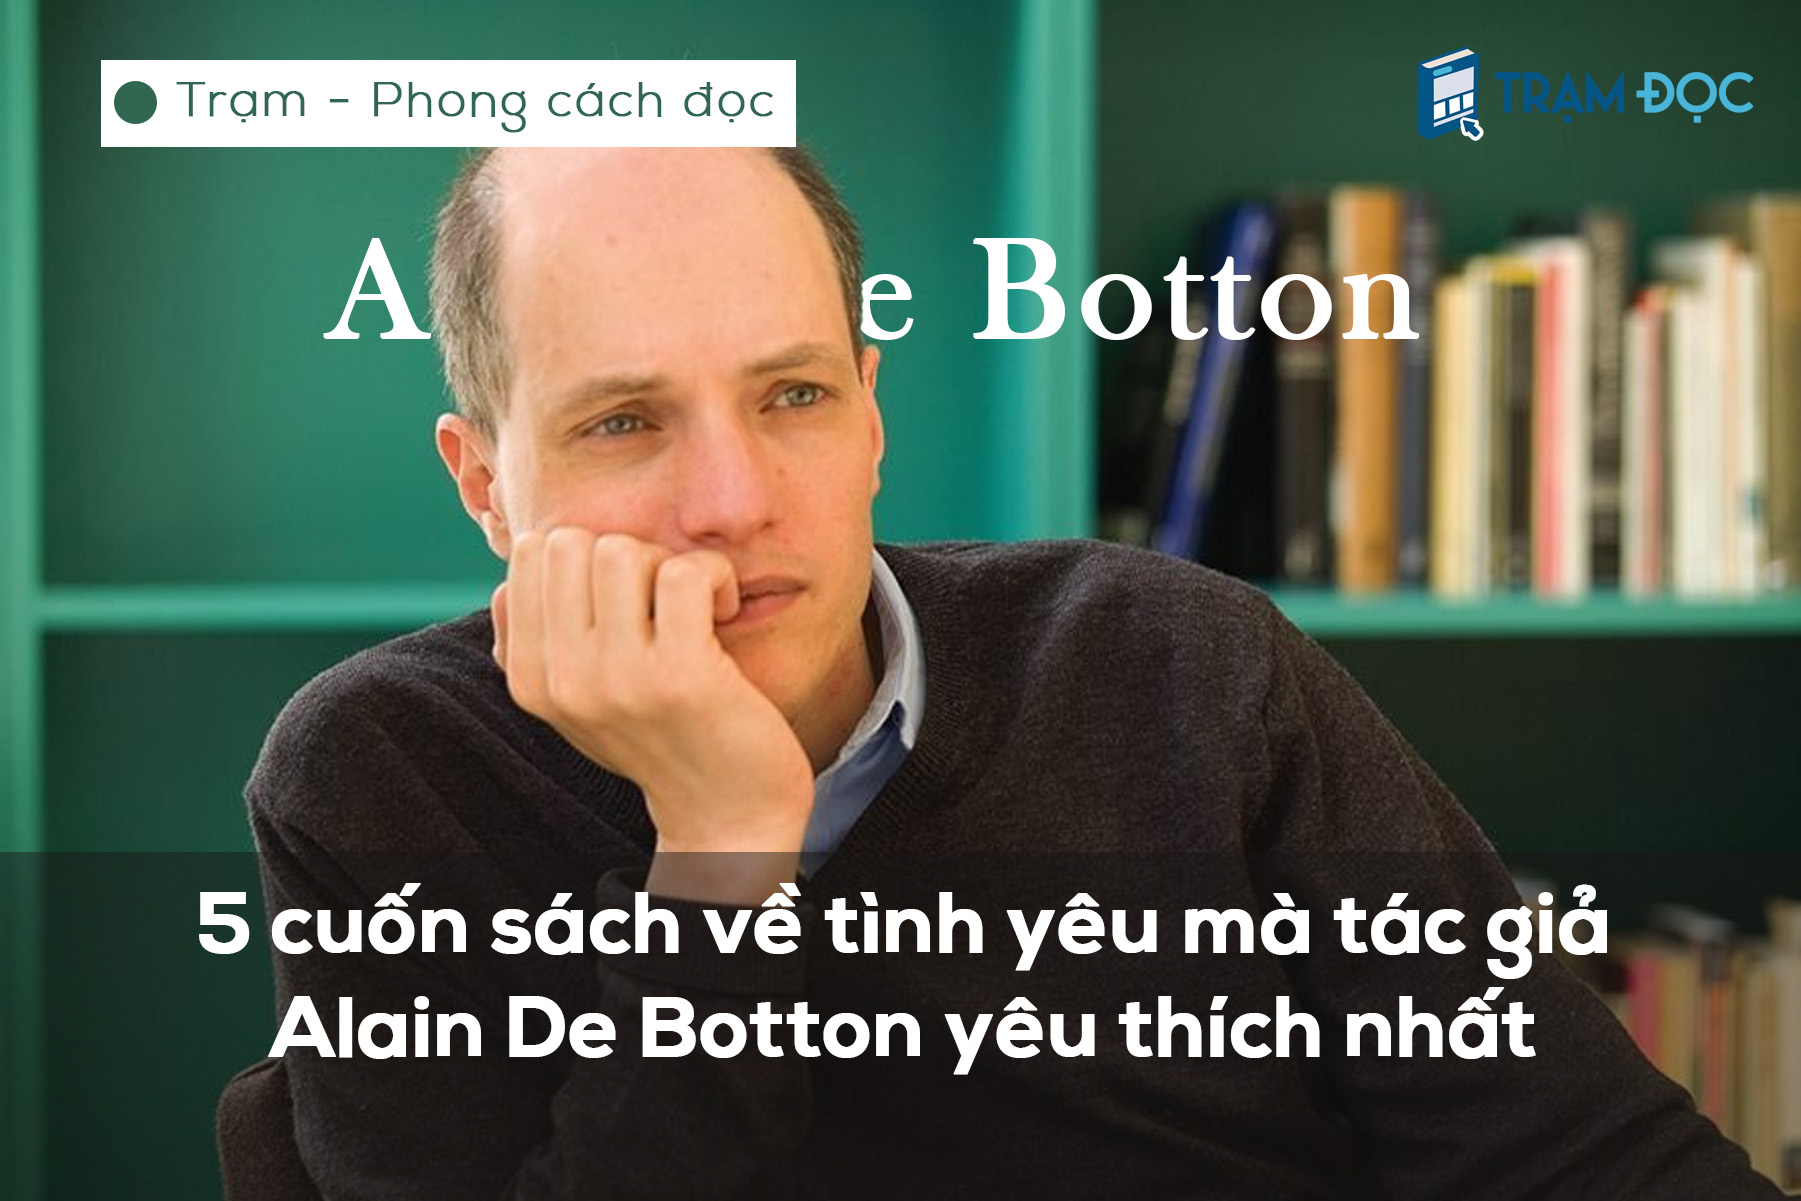 5 cuốn sách về tình yêu mà tác giả Alain De Botton yêu thích nhất